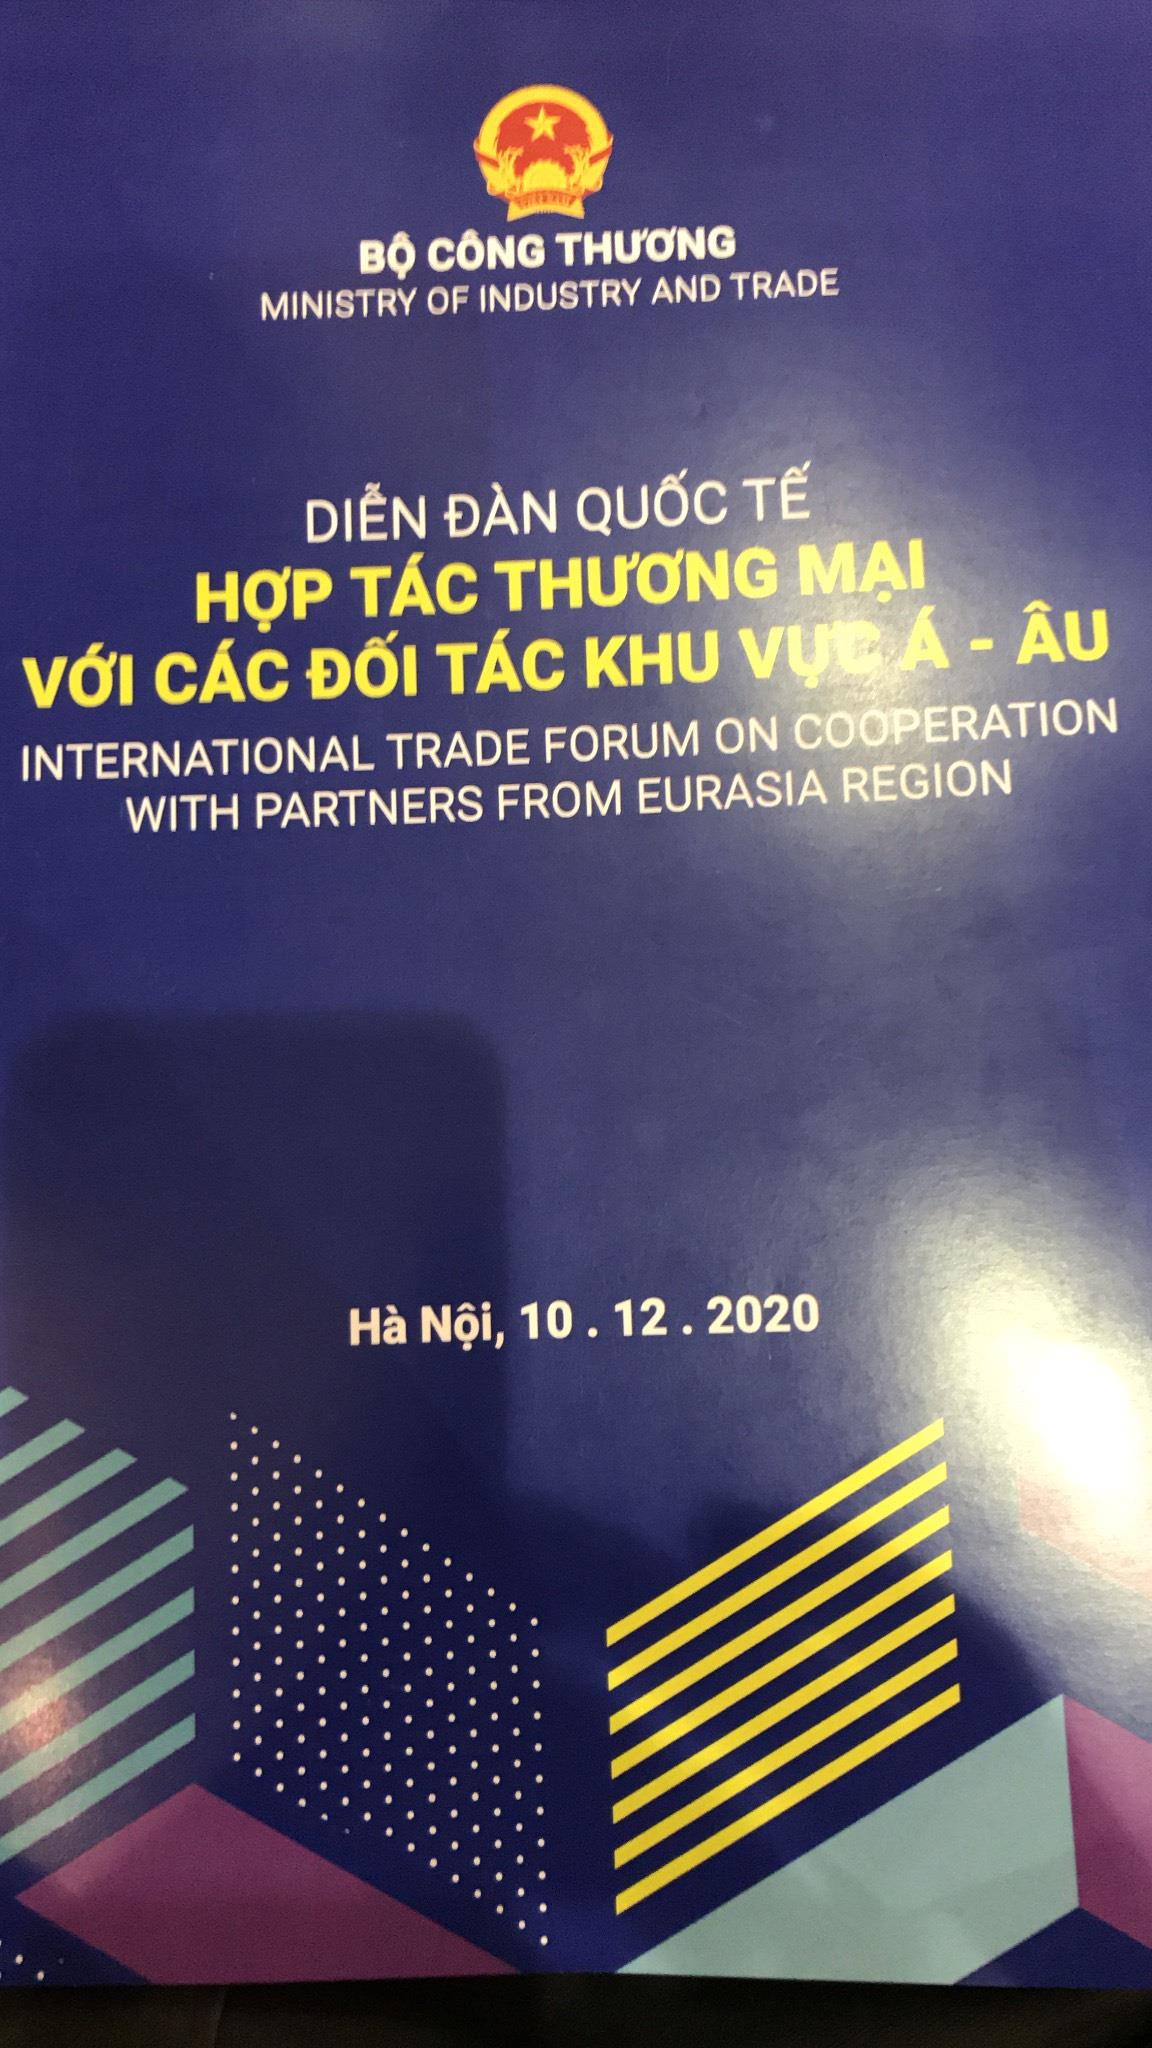 Mời tham dự Diễn đàn hợp tác thương mại với các đối tác khu vực Á- Âu 2020